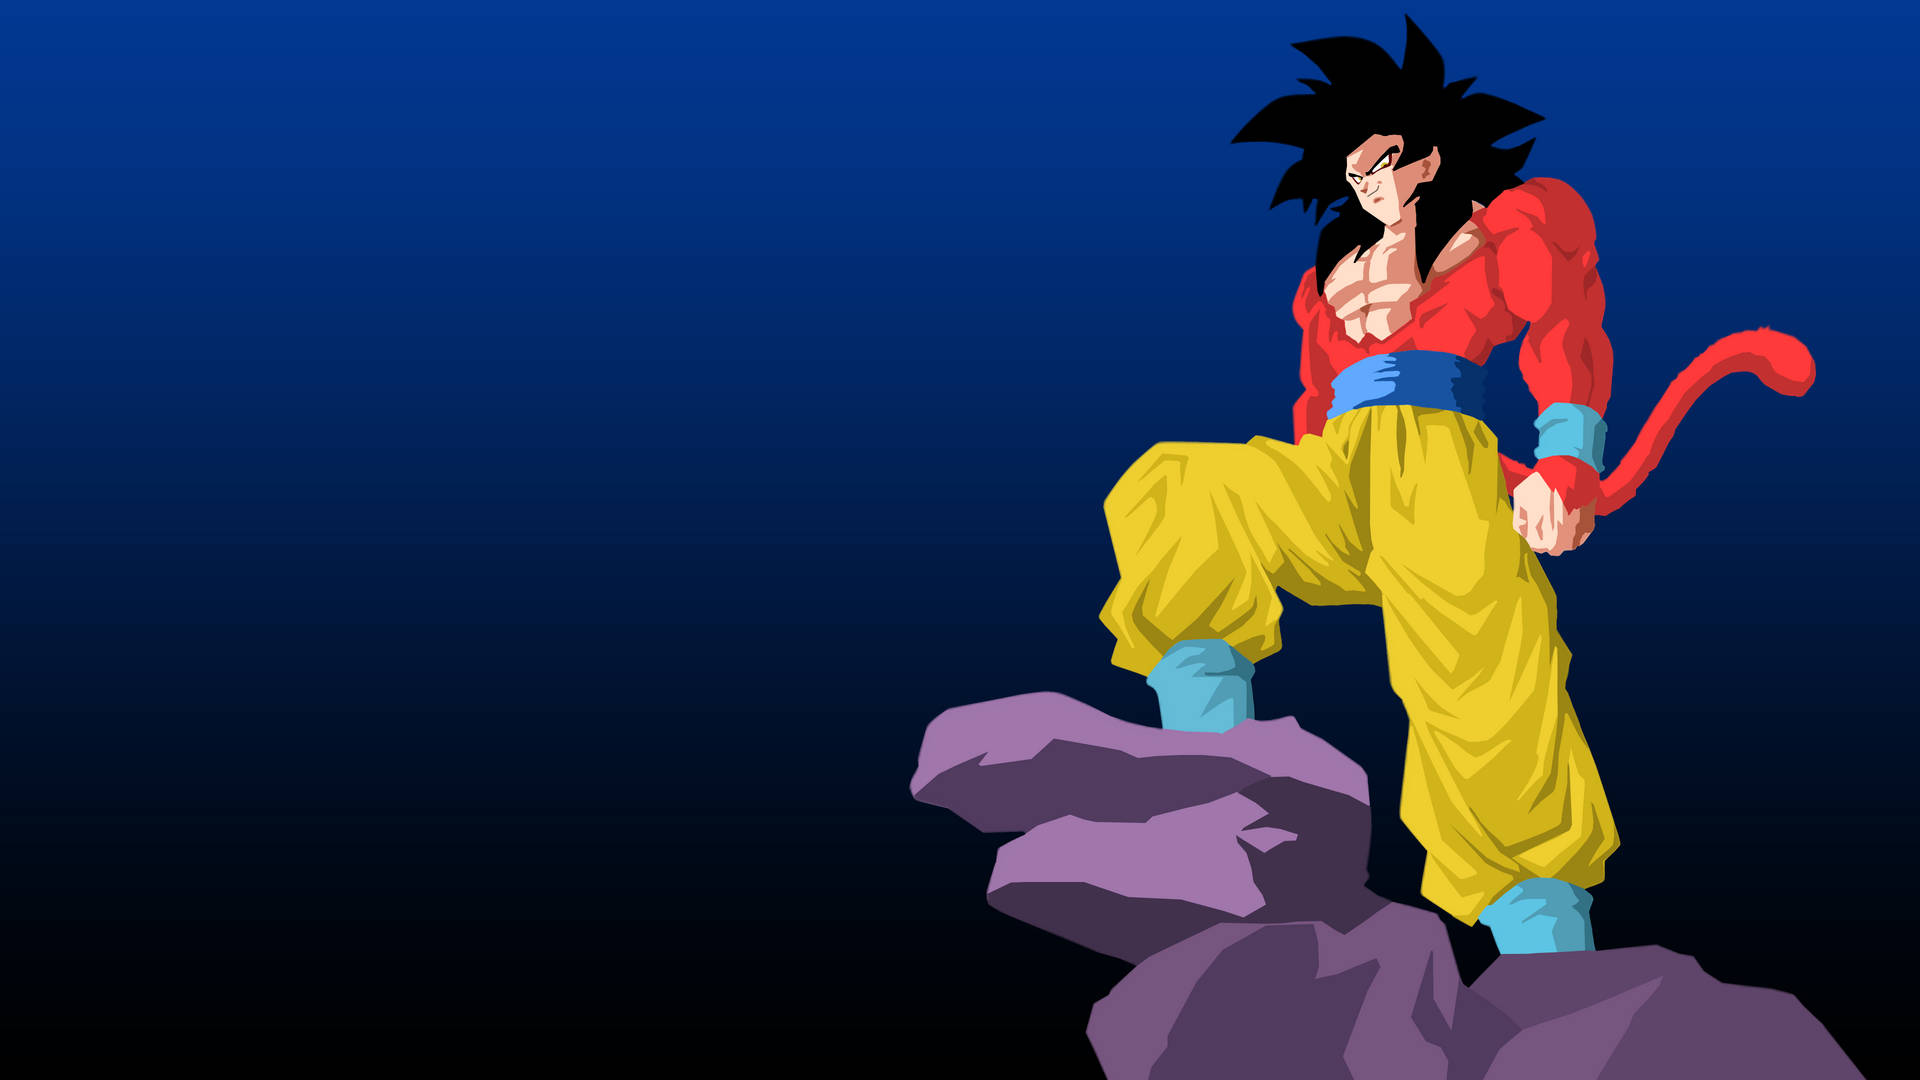 Supersaiyan 4 Goku Dbz 4k Würde Auf Deutsch Übersetzt: Super Saiyan 4 Goku Dbz 4k. Das Bezieht Sich Auf Ein Mögliches Motiv Für Einen Computer- Oder Handyhintergrund Mit Dem Charakter Goku Aus Der Anime-serie Dragonball Z In Seiner Super Saiyan 4 Transformation Und In 4k-auflösung. Wallpaper